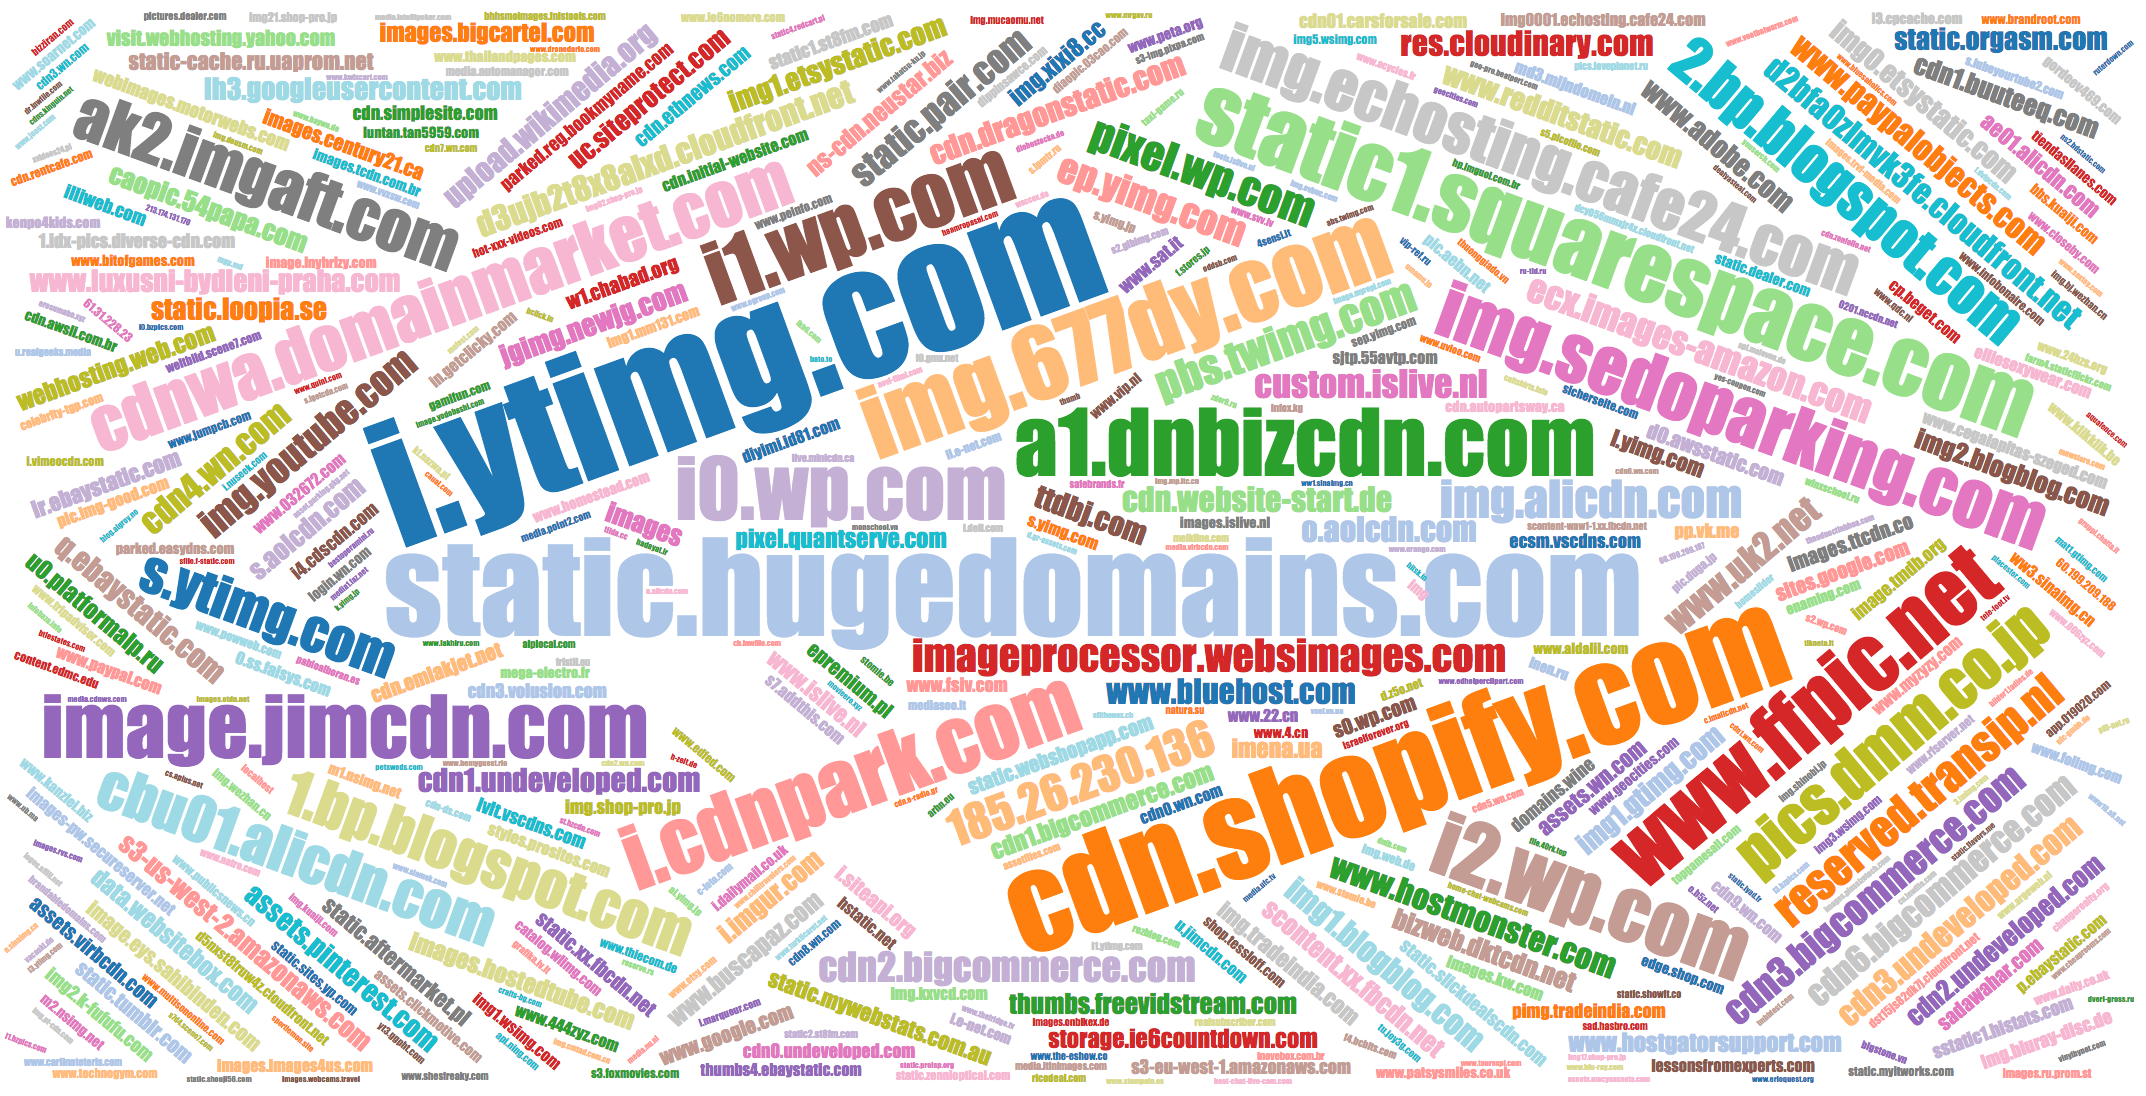 Popular names of IMG domains yt3.ggpht.com, yesswl.30000kk.com, etc.